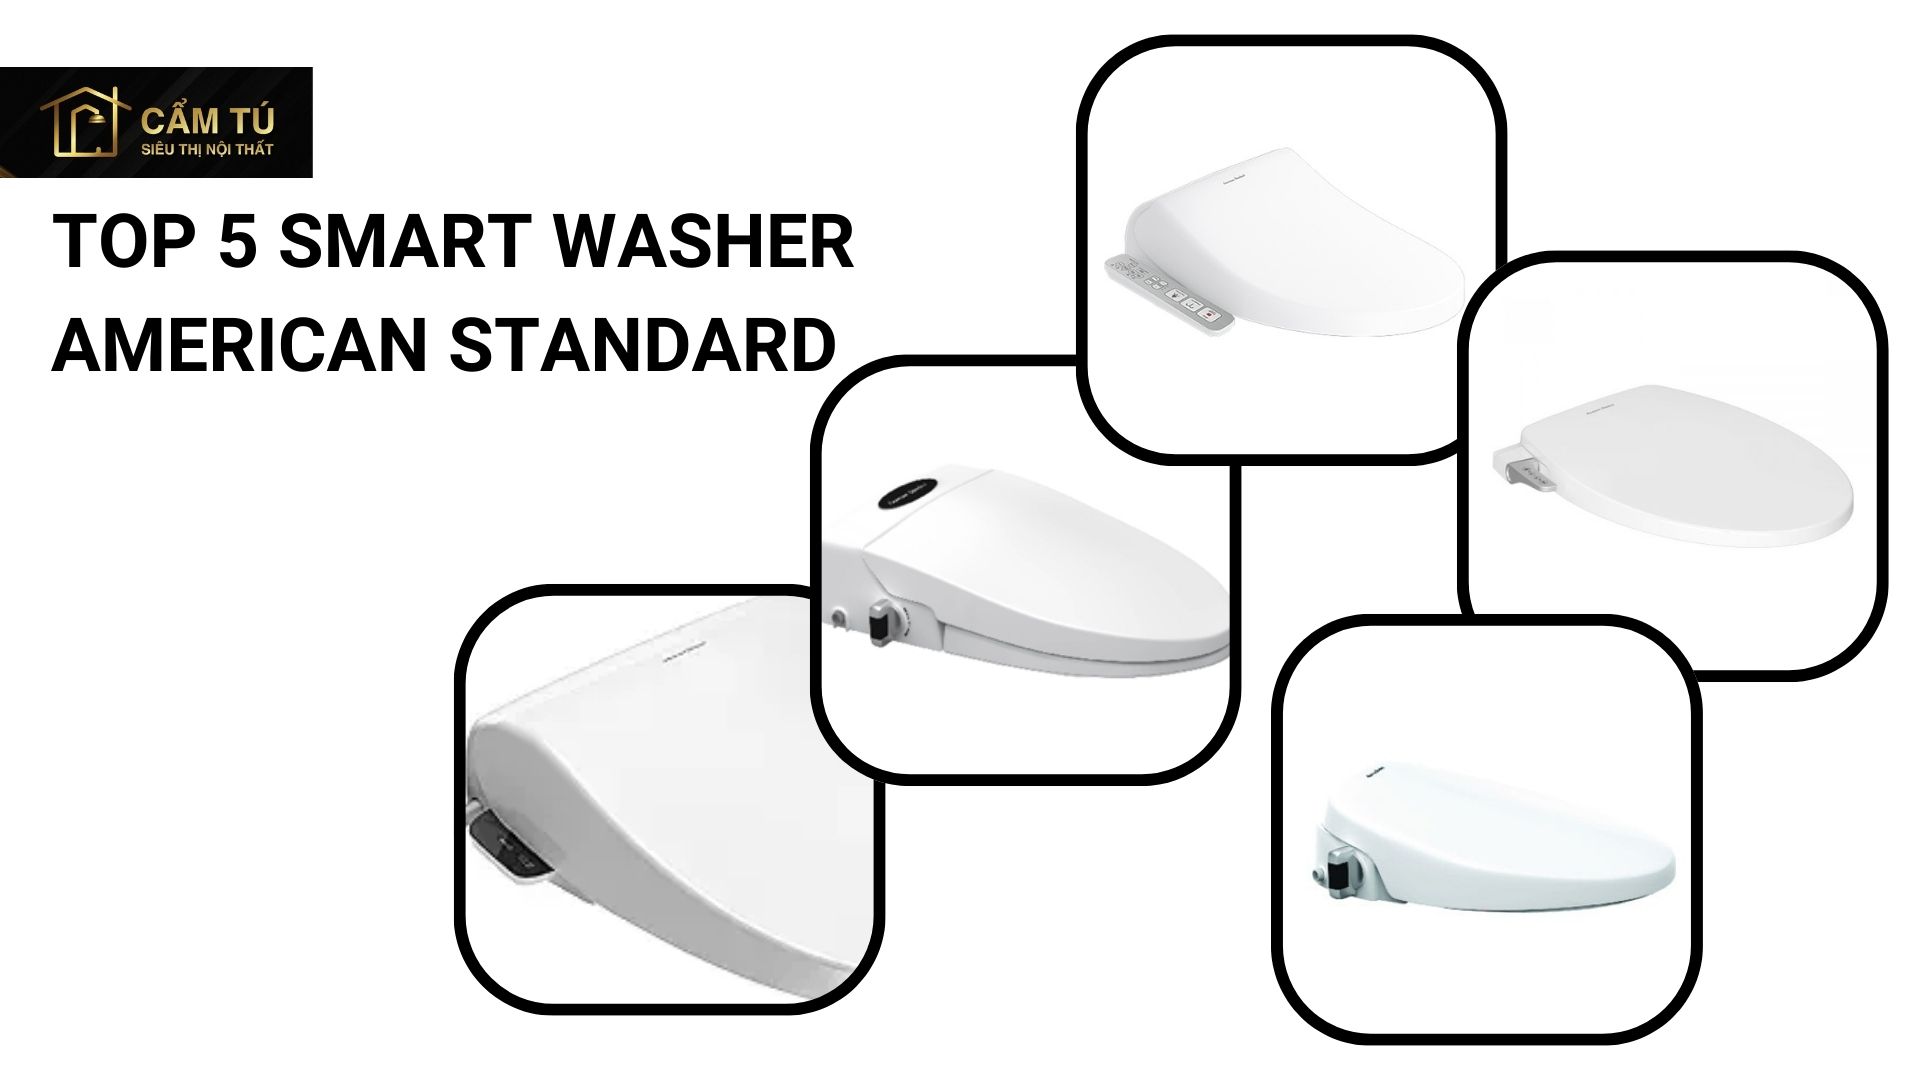 Top 5 nắp rửa thông minh smart washer American Standard được ưa chuộng nhất